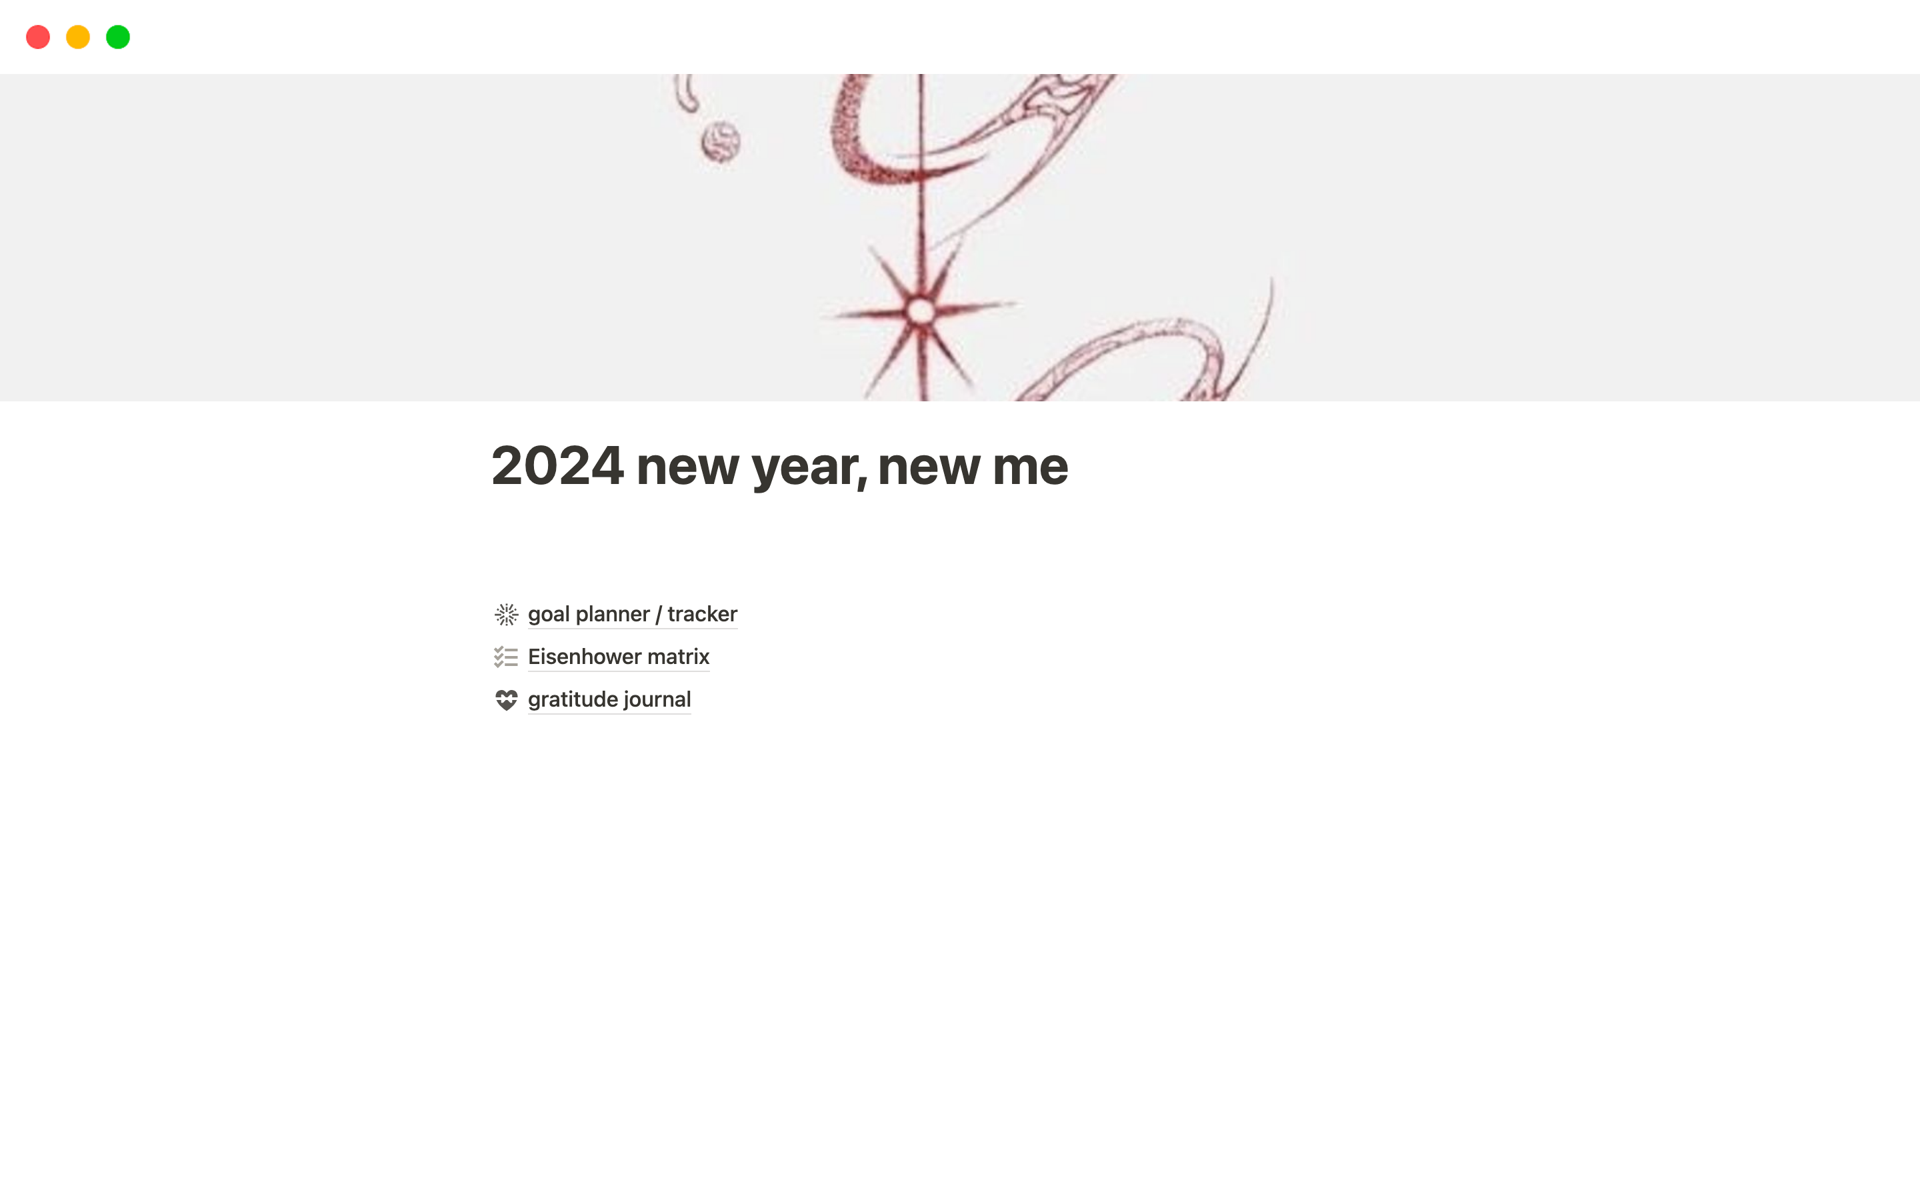 Vista previa de una plantilla para 2024 new year, new me 